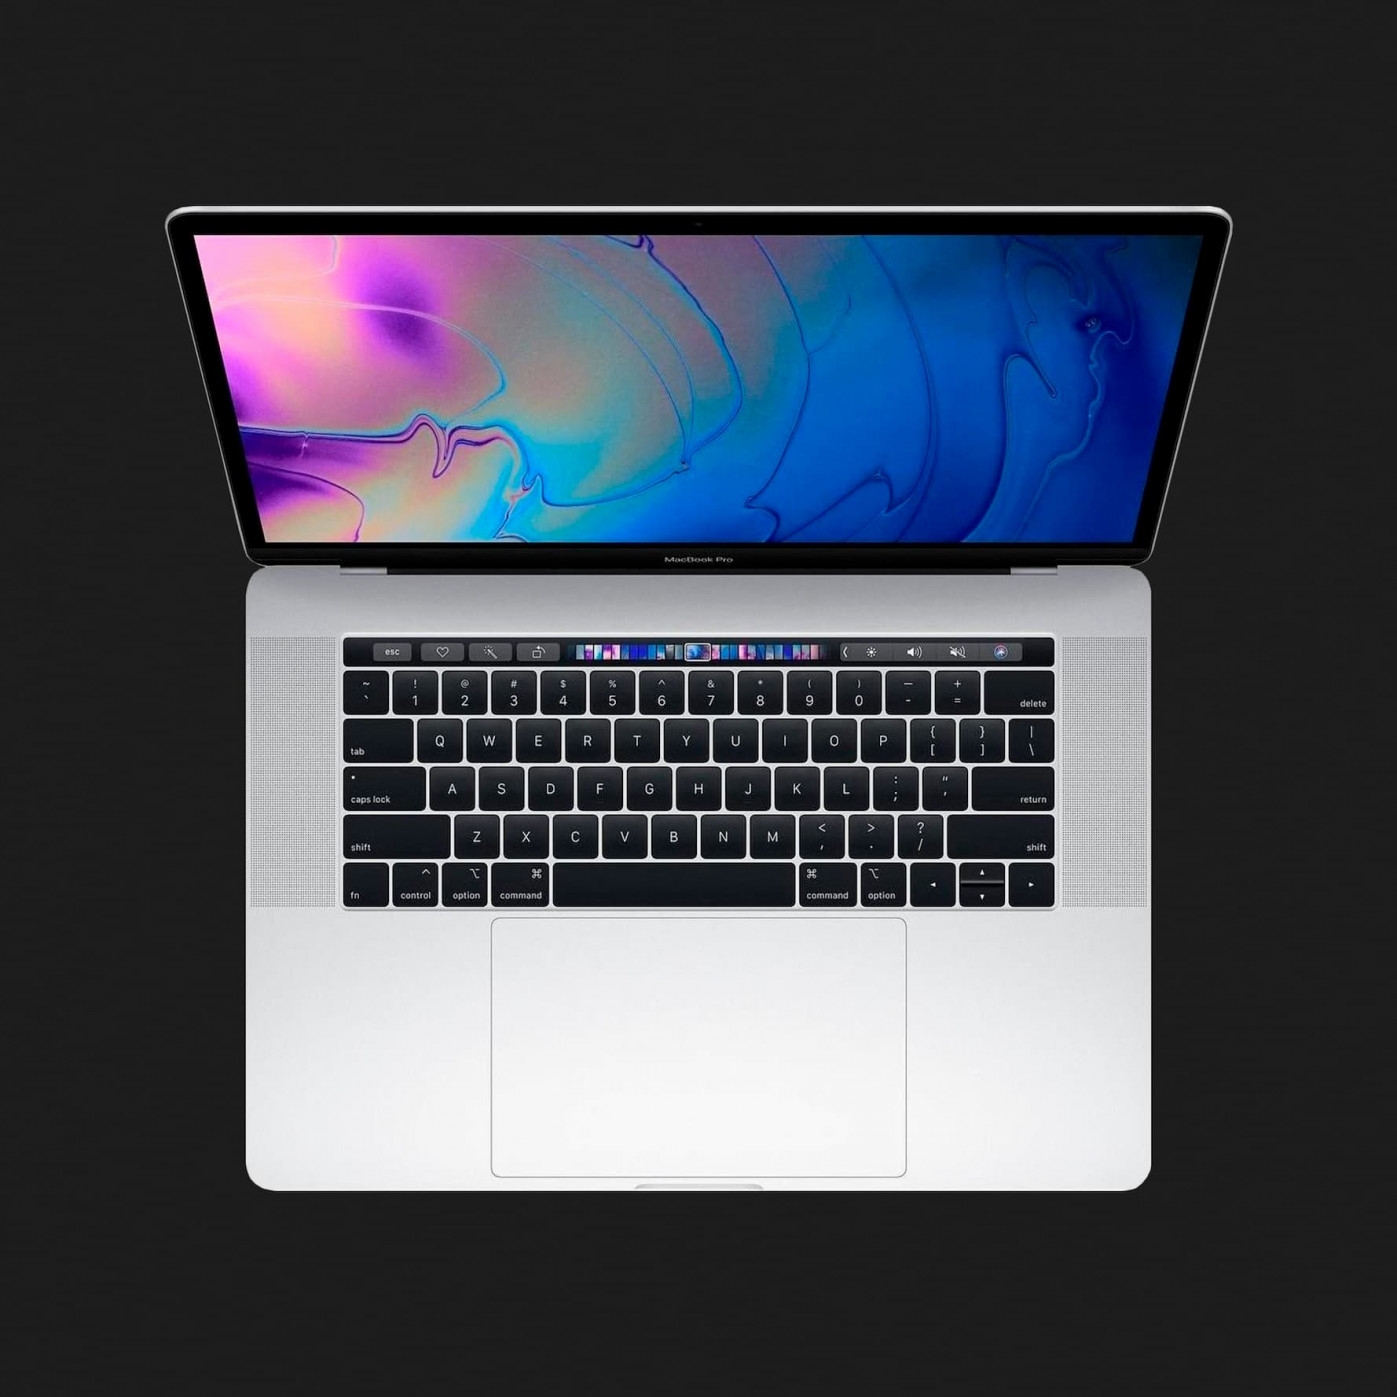 б/у Apple MacBook Pro 15, 2018 (256GB) (MR962) (Відмінний стан)